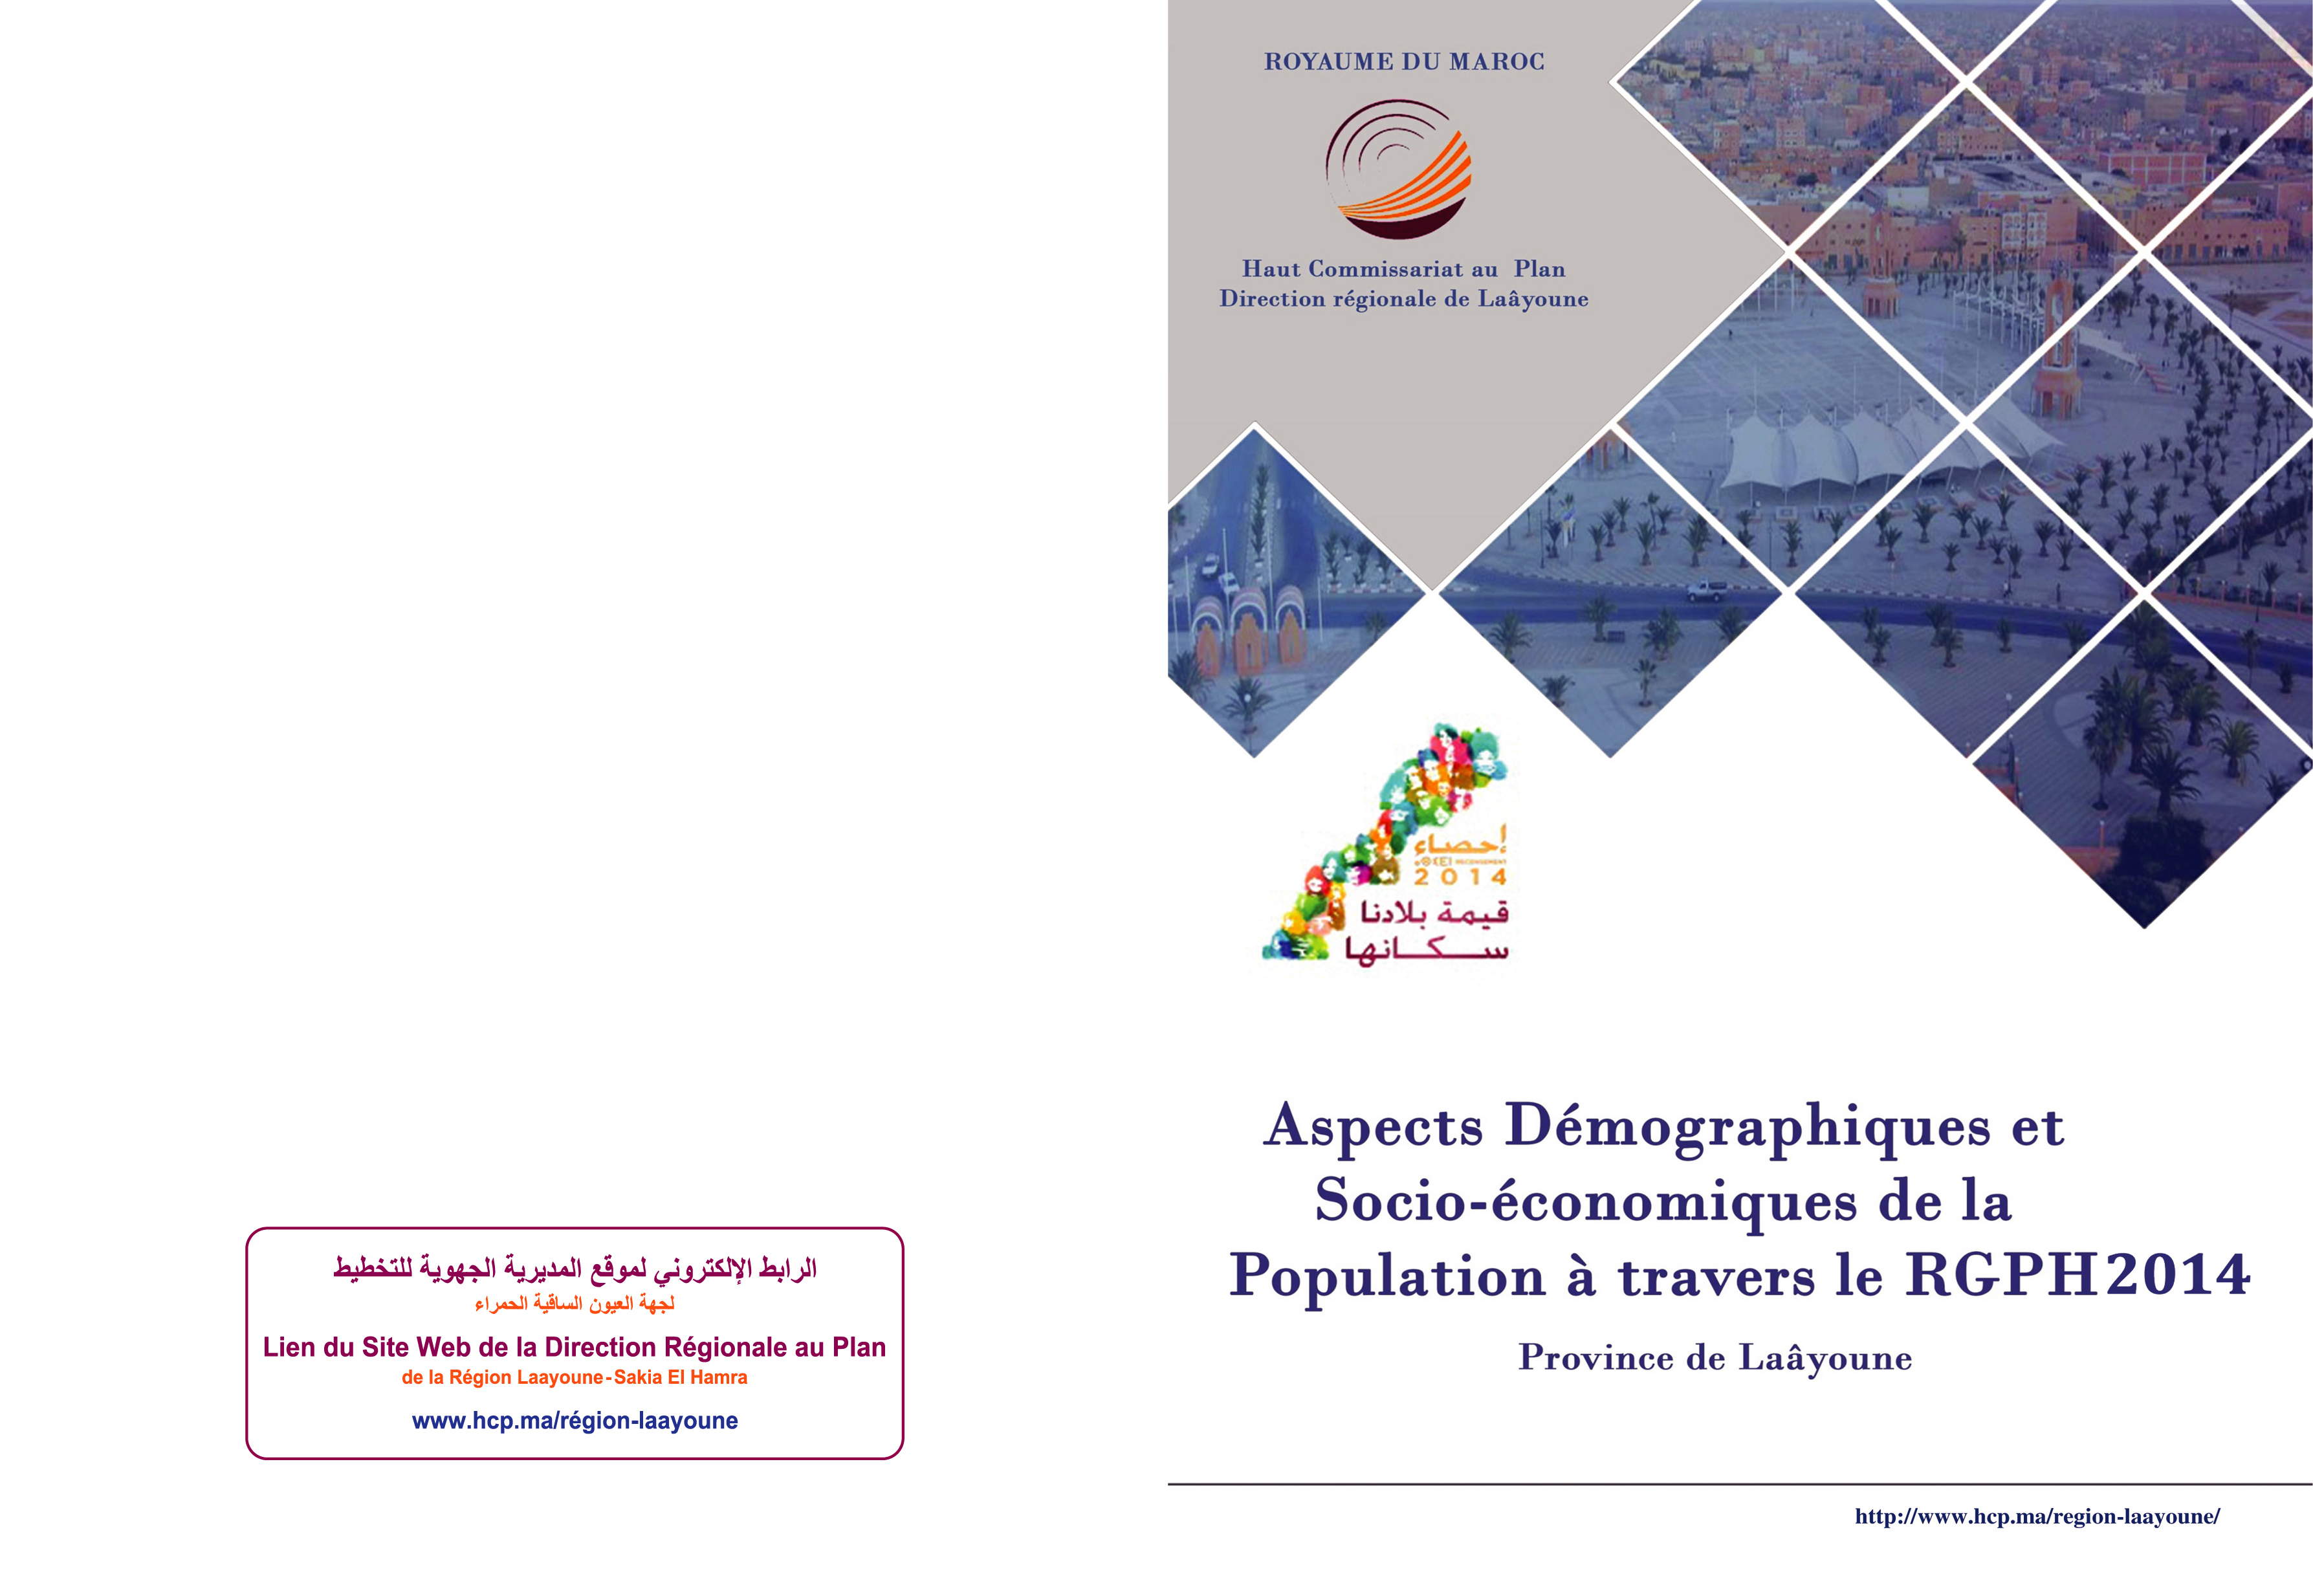 Aspects Démographiques et Socio-économiques de la Population à travers le RGPH 2014. Province de Laayoune.